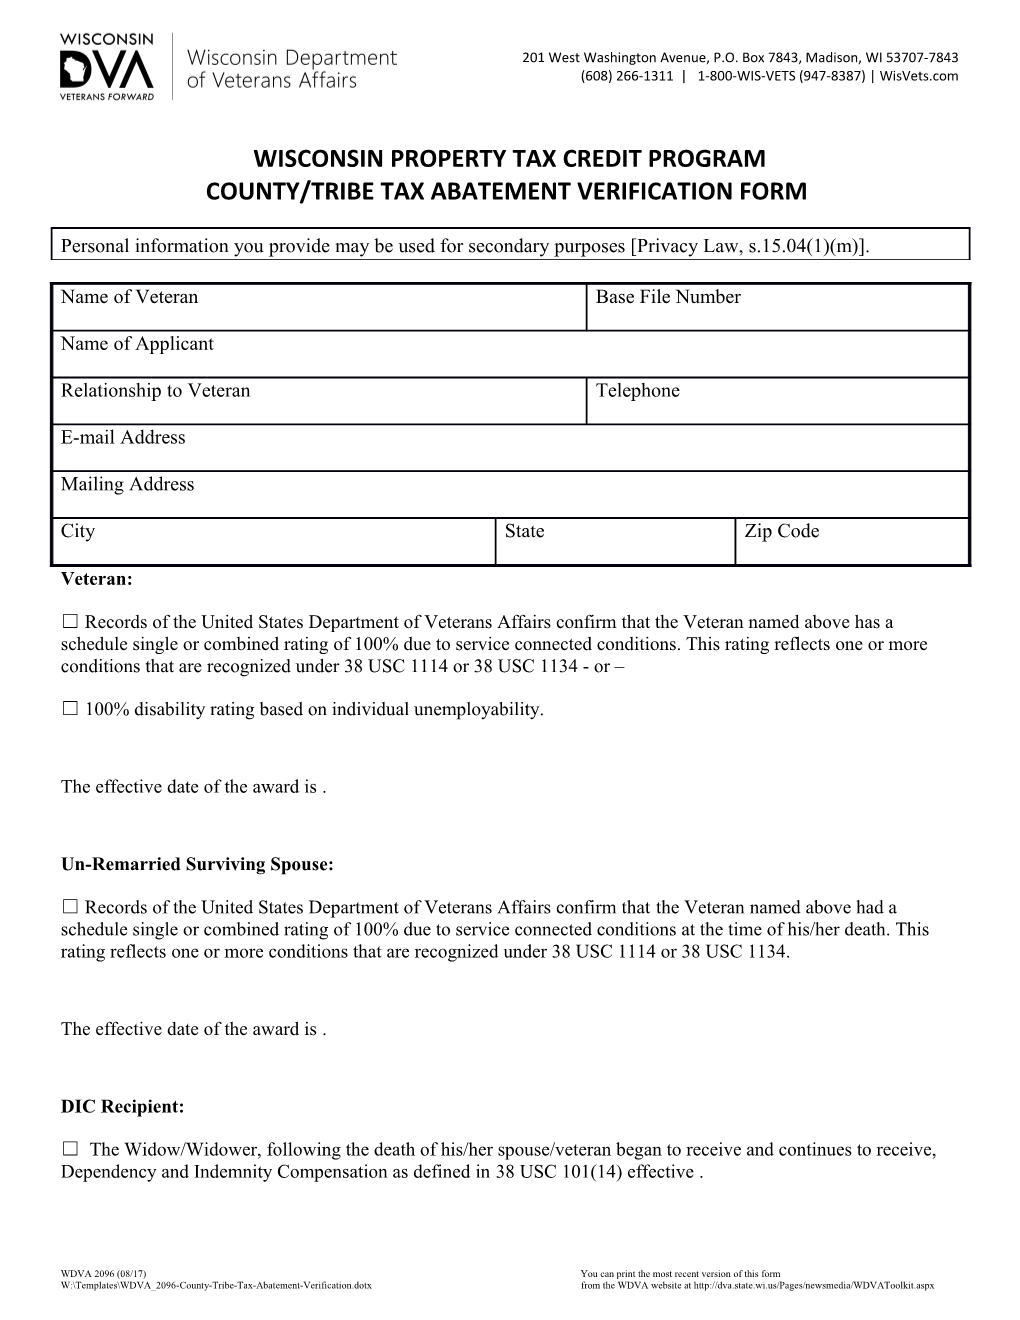 WDVA 2096 County Tribe Tax Abatement Verification